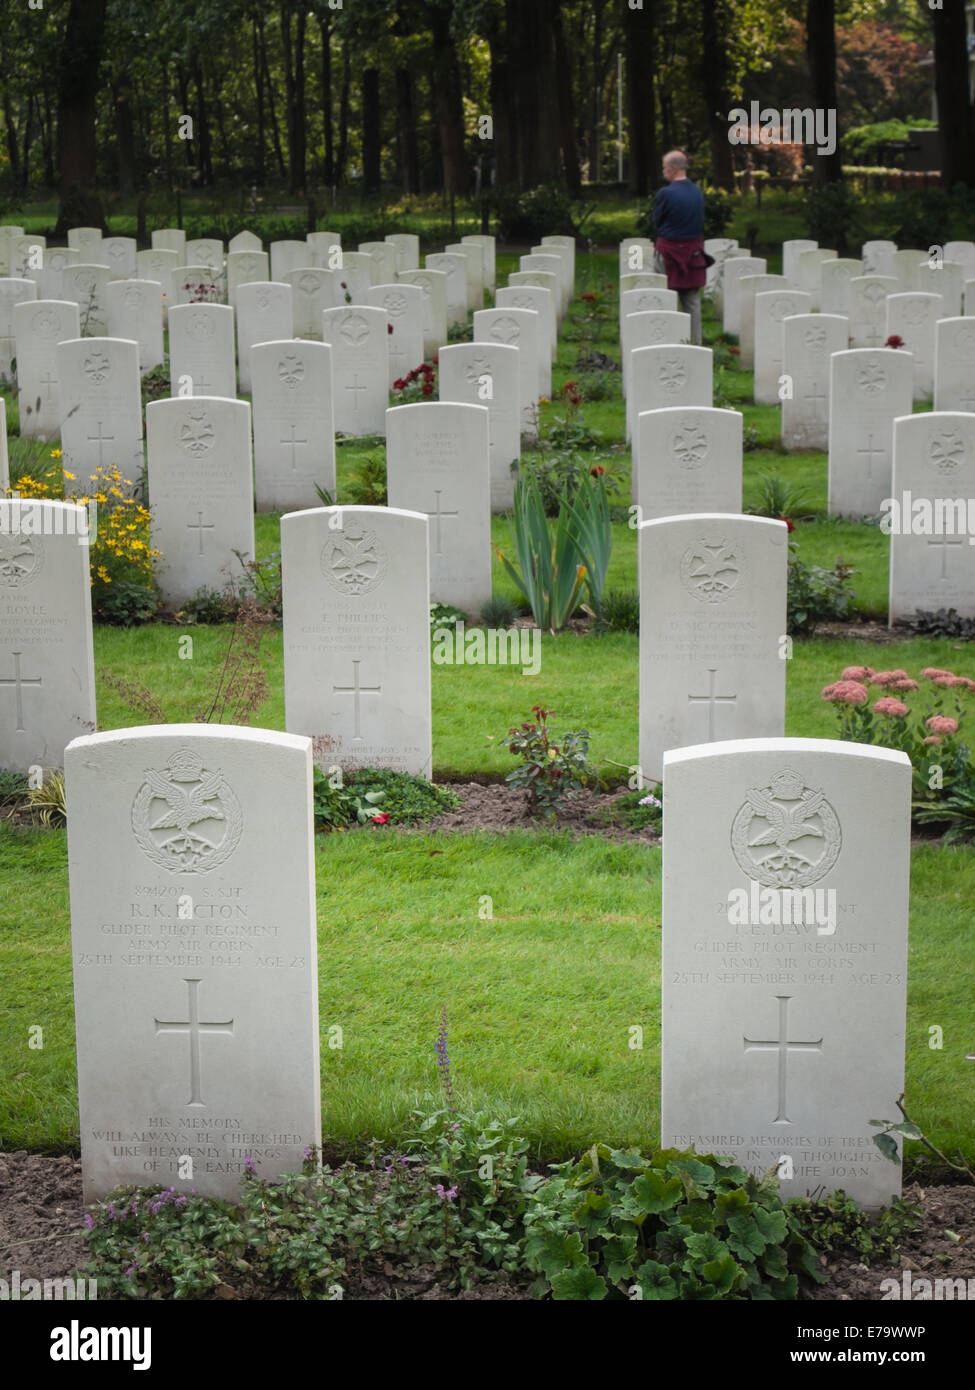 Las tumbas de miembros del regimiento de piloto planeador el Cuerpo Aéreo del Ejército cementerio de guerra aliada de Oosterbeek. Foto de stock